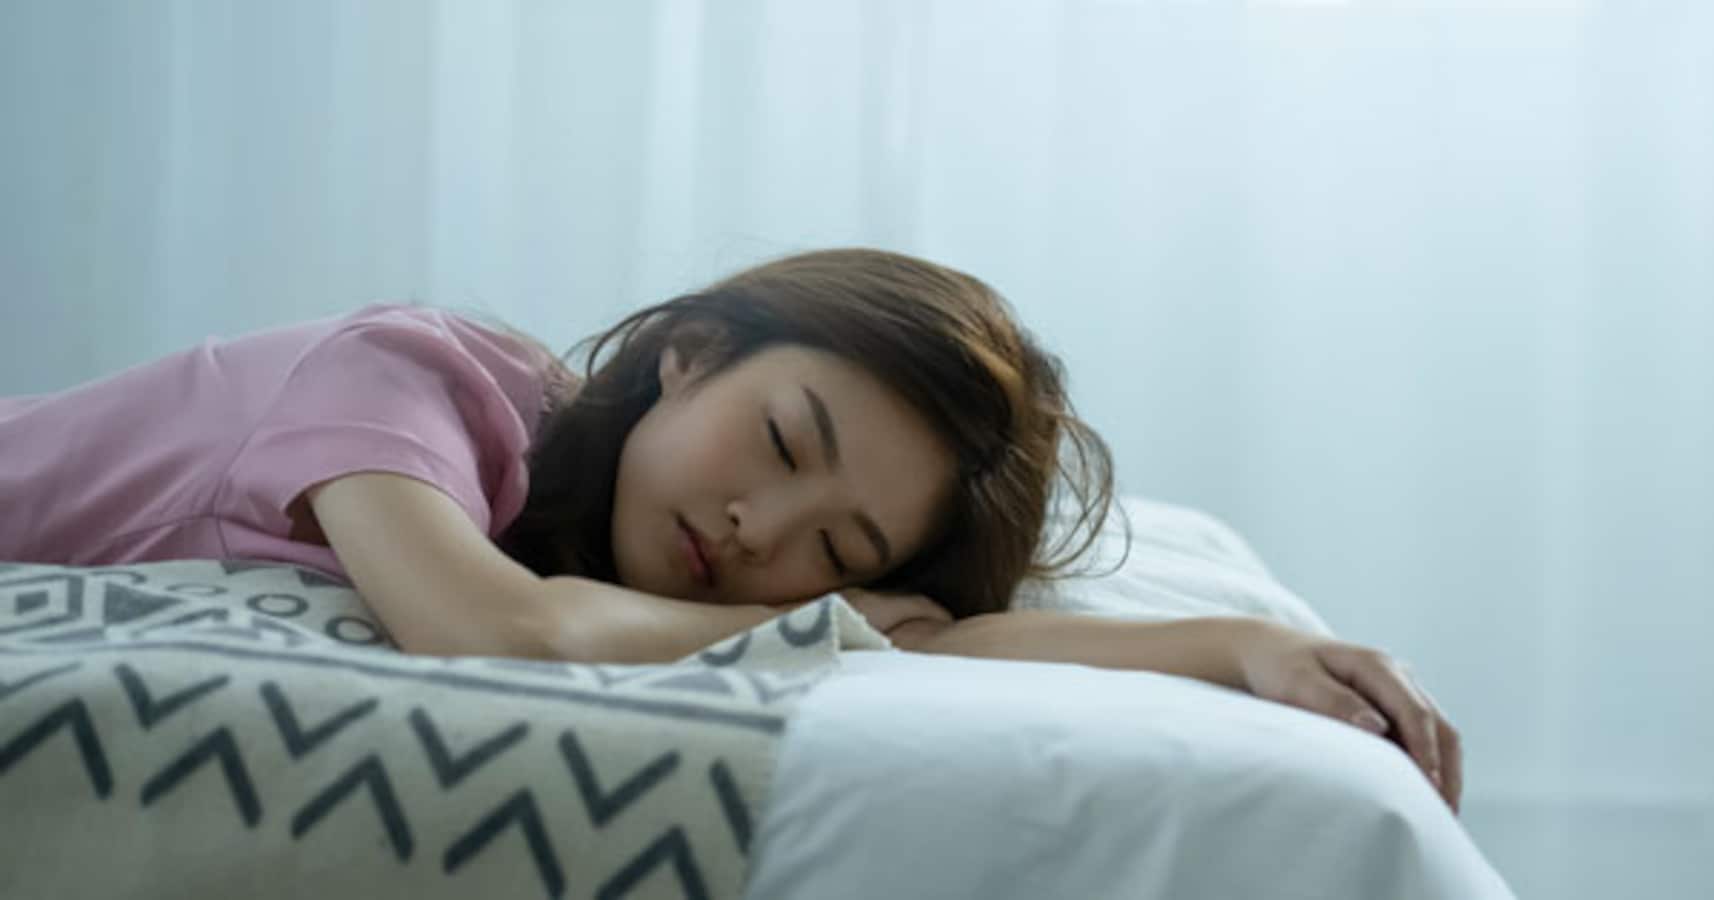 「眠いというよりいつの間にか寝てる」生理前の眠気の強さを知った男性の投稿に、共感の声が殺到 Facebook navi[フェイスブックナビ]